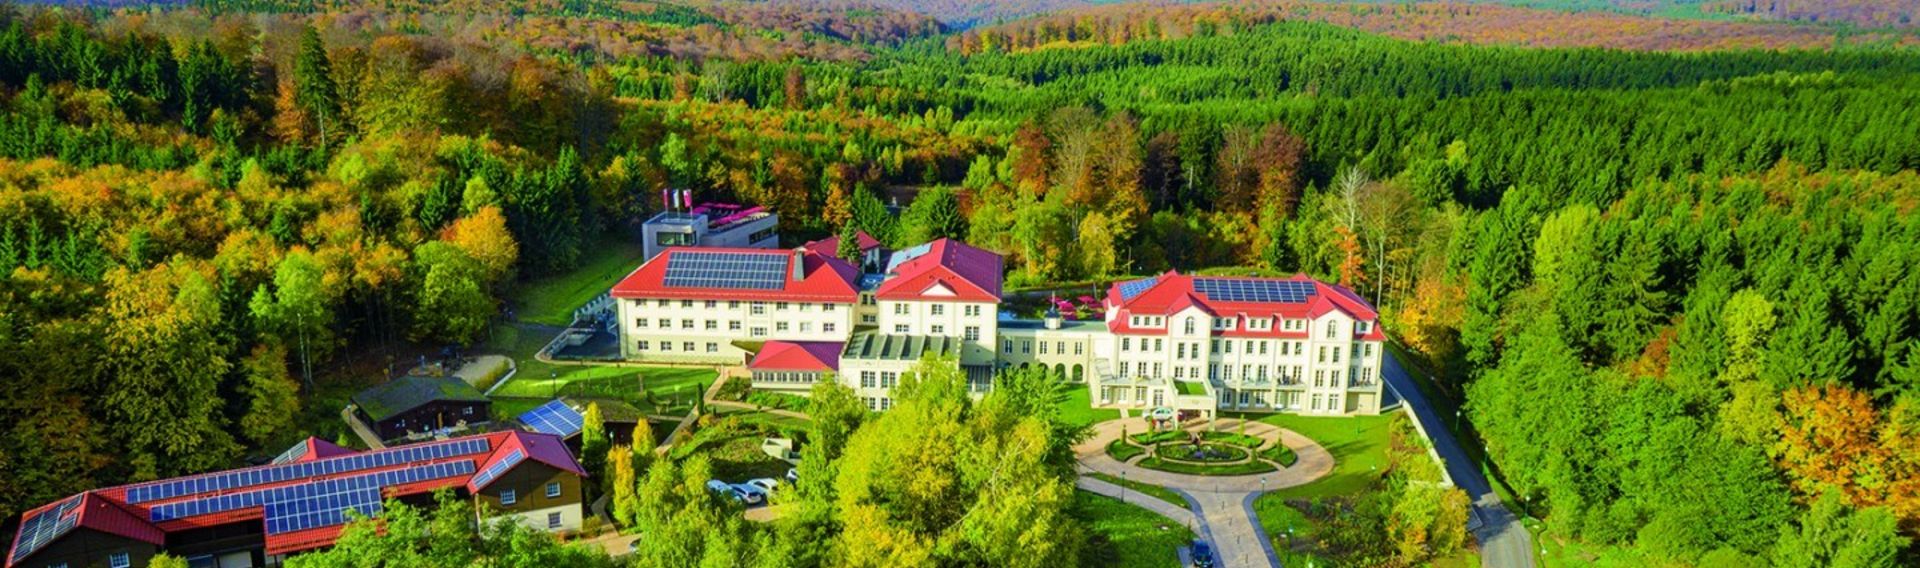 Hotel Harz – inmitten der Natur gelegen